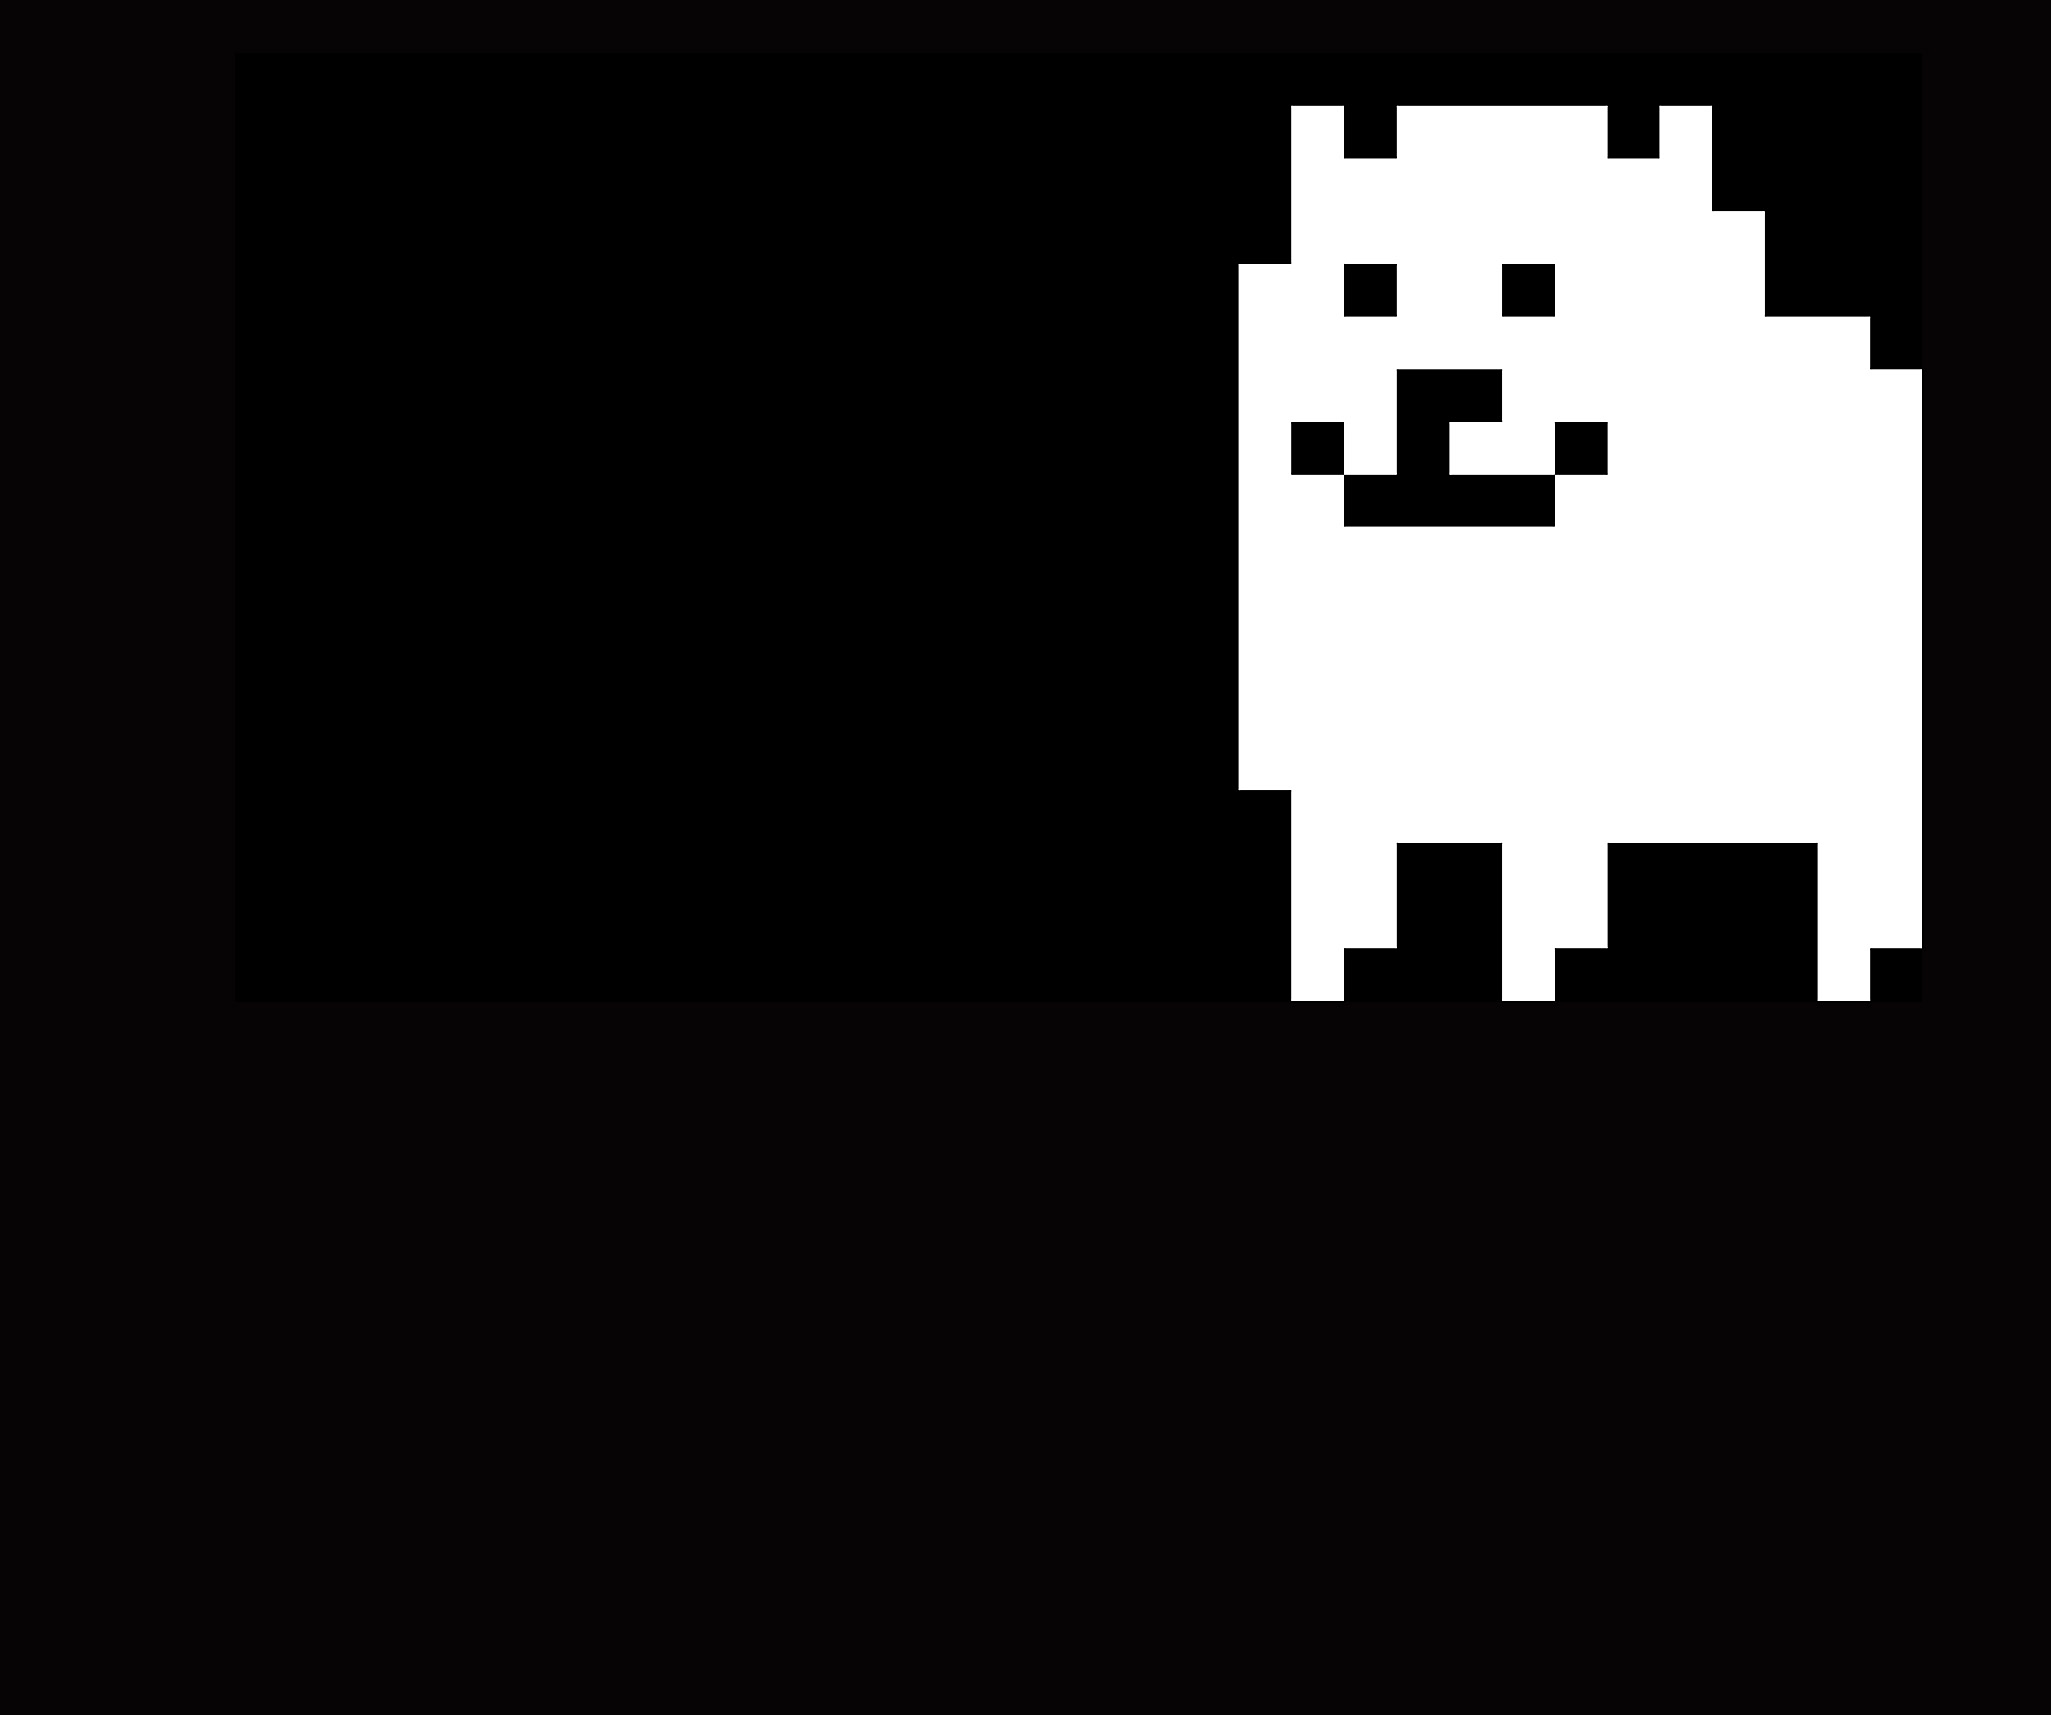 Arte principal de Undertale que muestra un perro pixelado